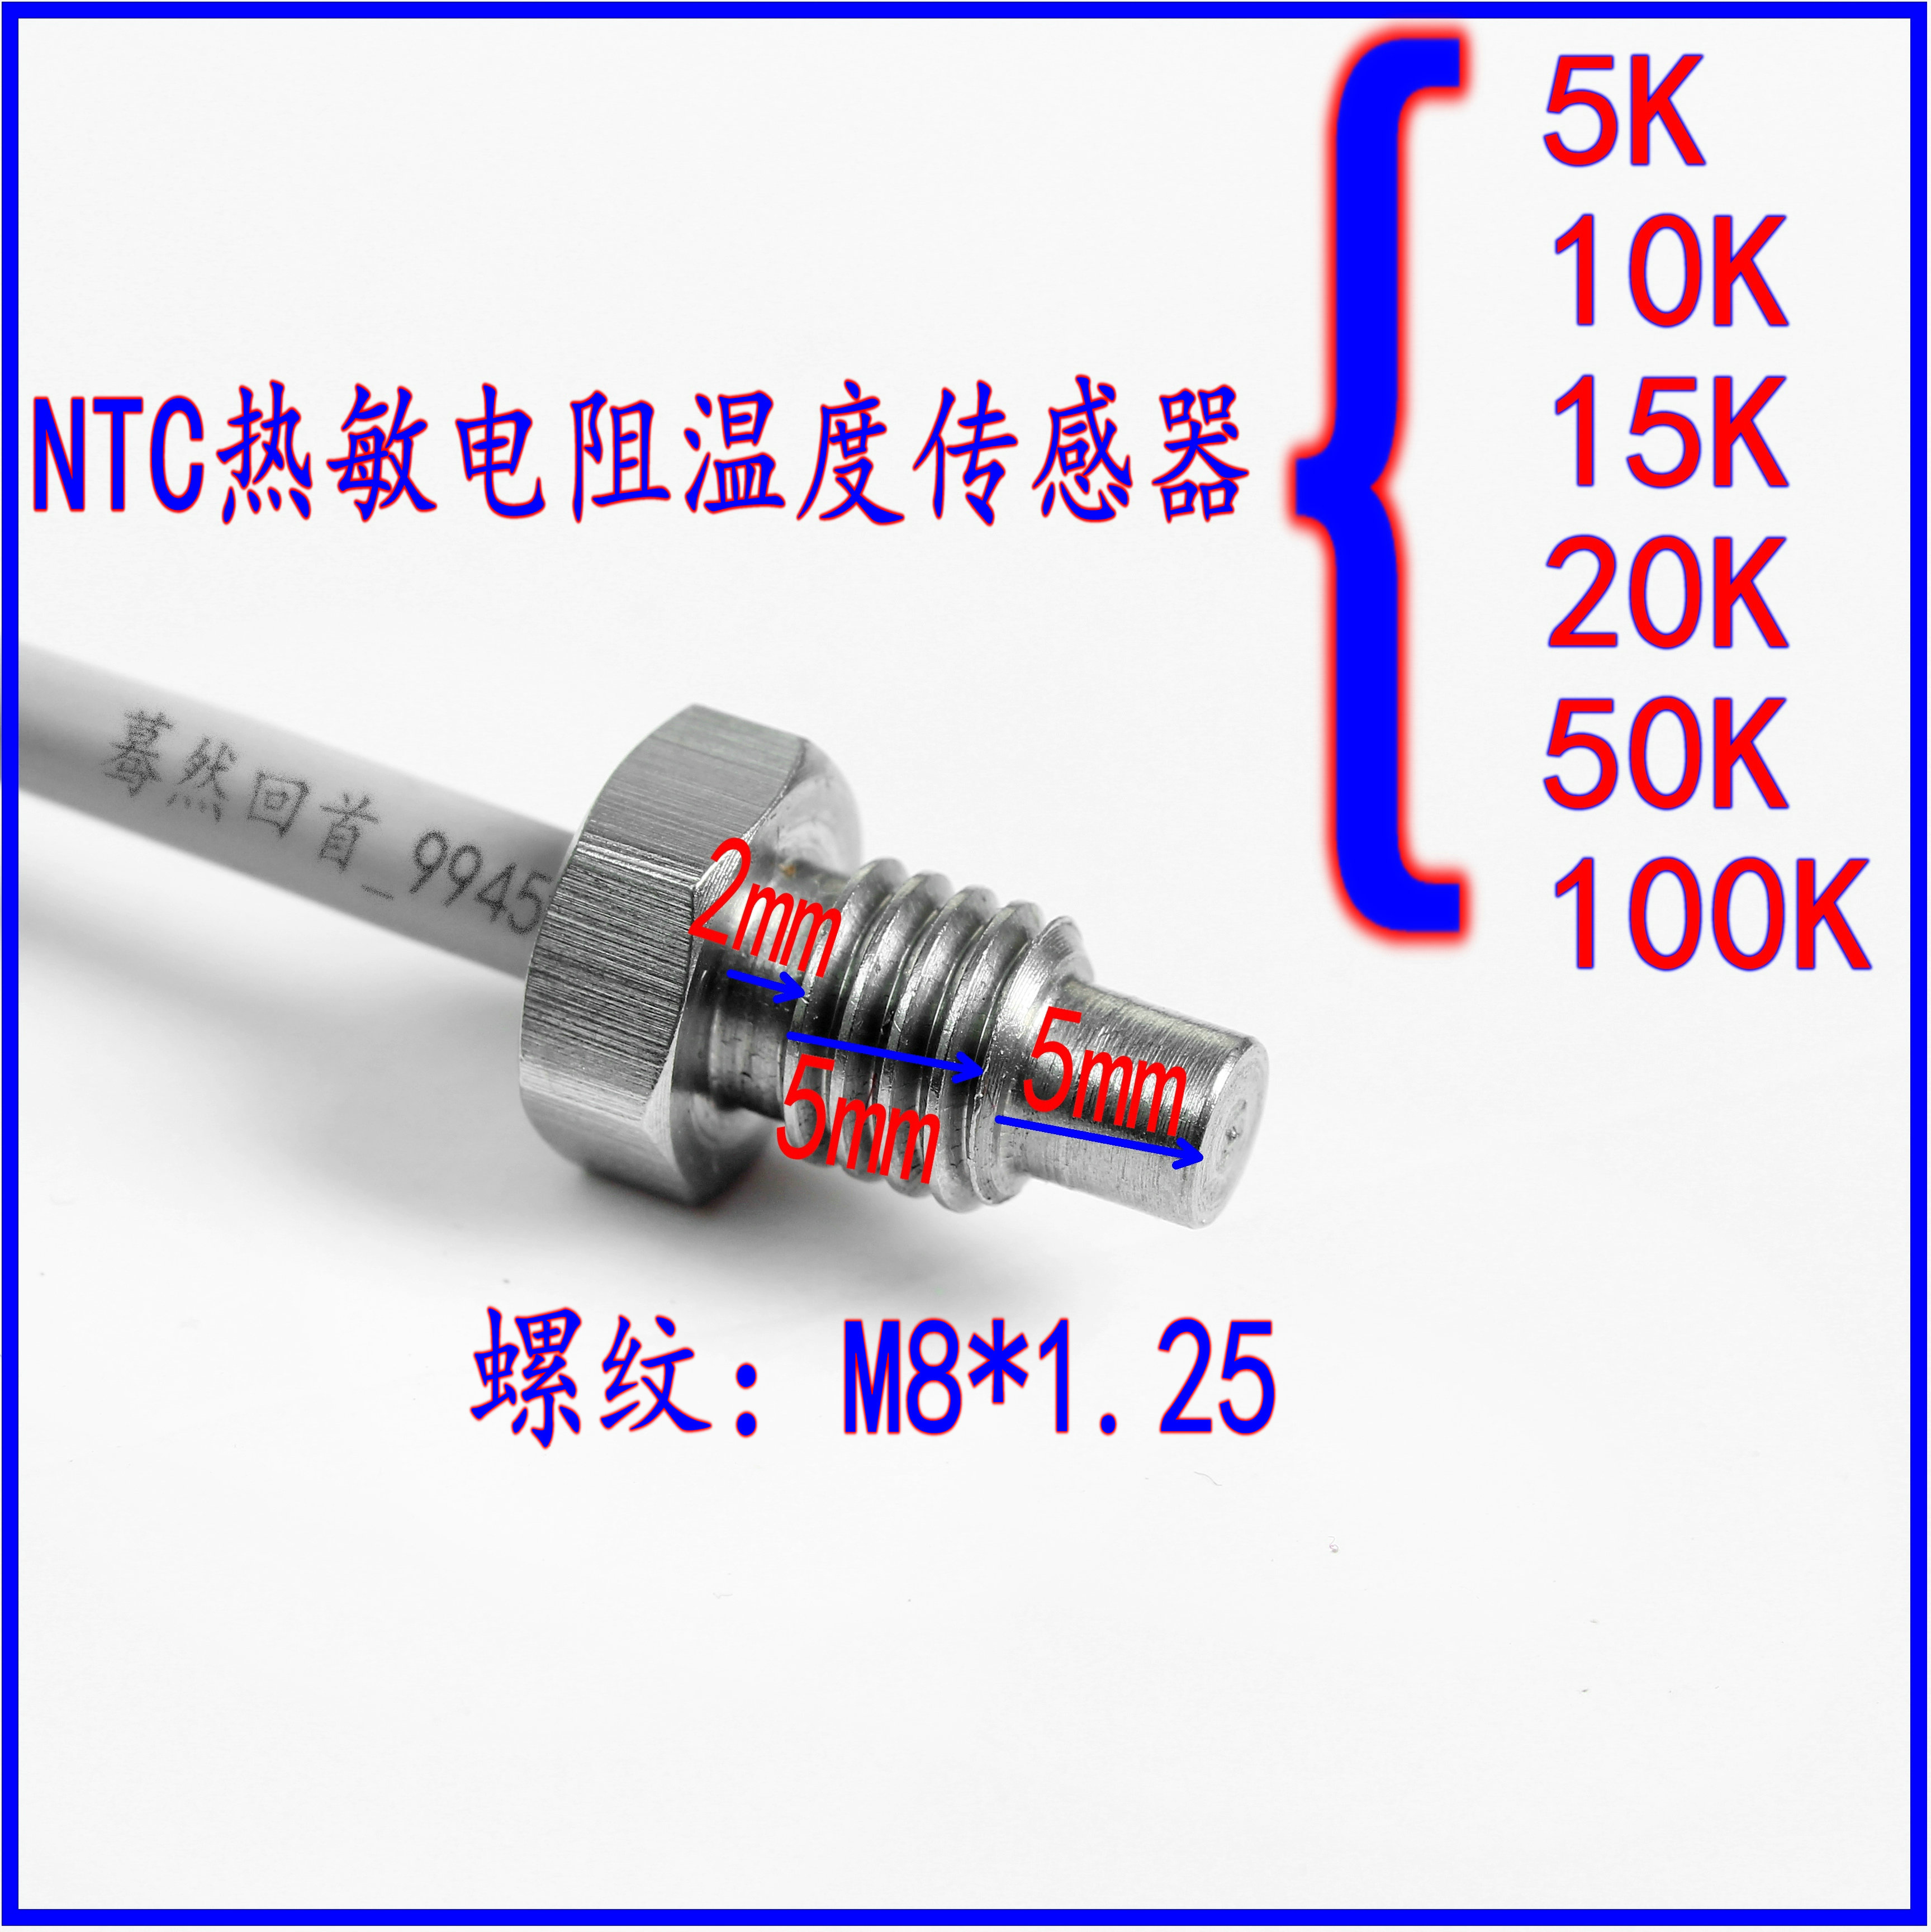 NTC温度传感器螺纹固定高温测温探头5k 10k 20k 50k 100k热敏电阻